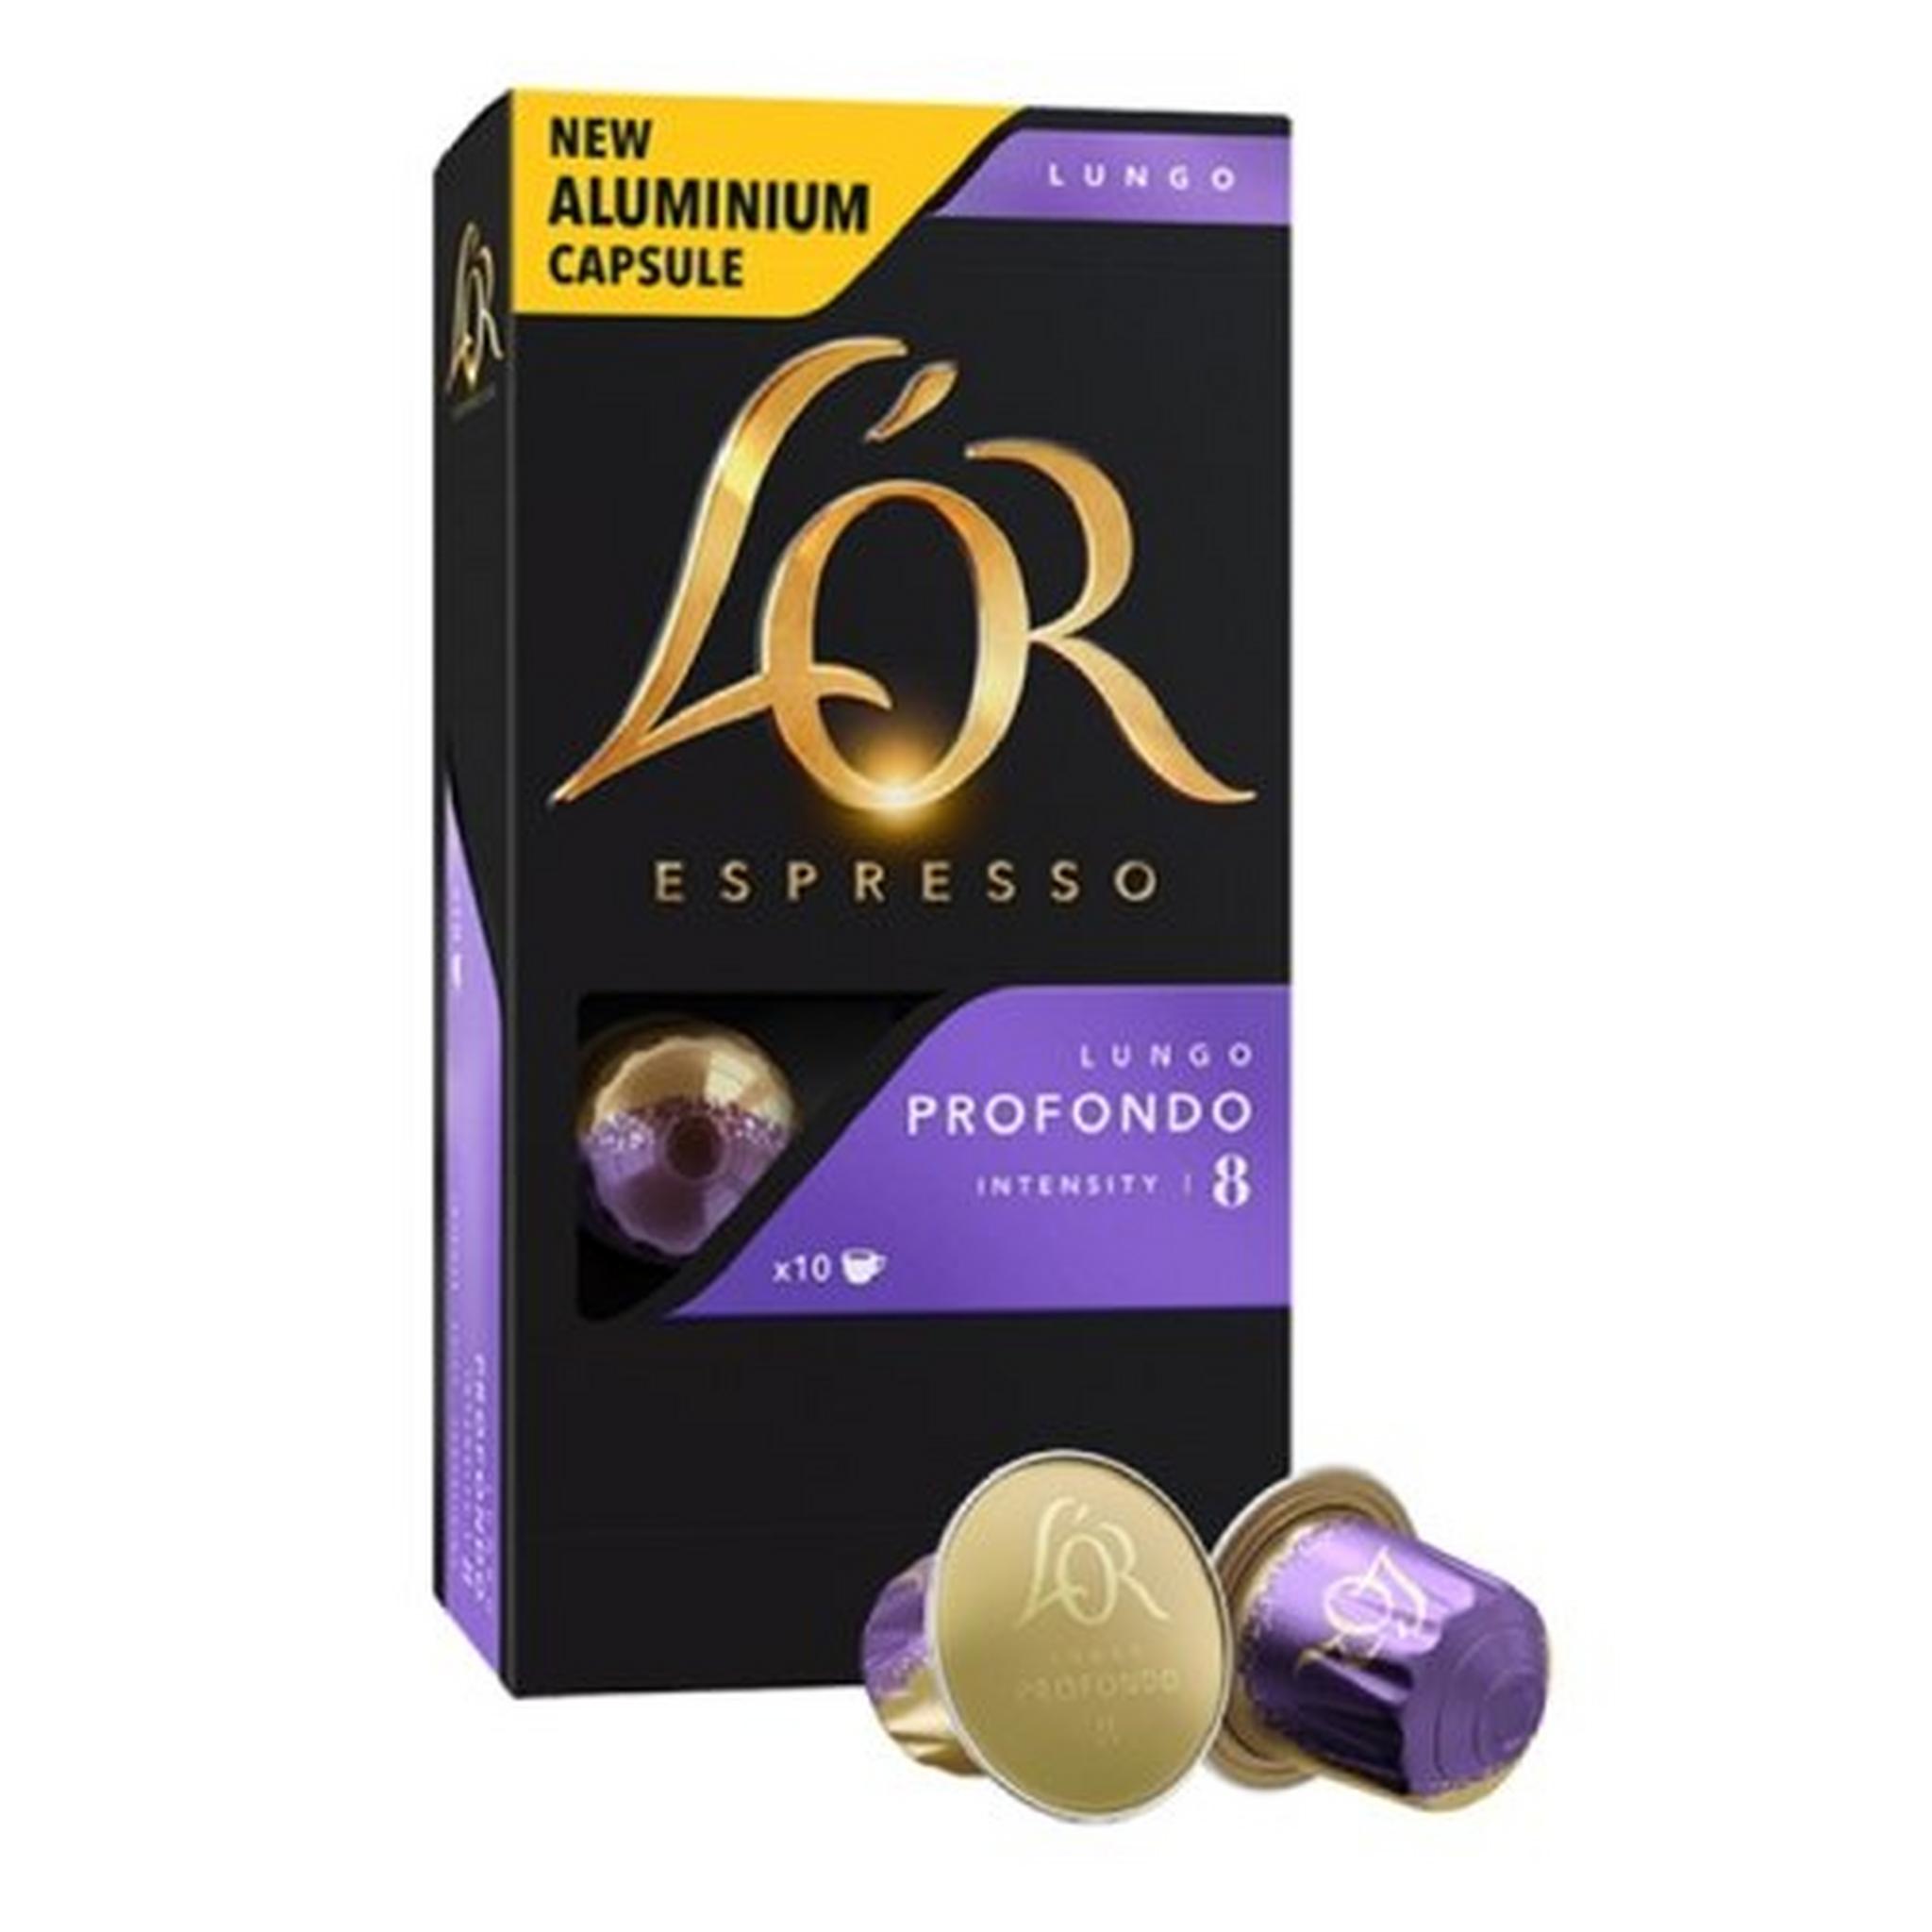 قهوة لور اسبرسو لونجو بروفوندو - 10 كبسولات